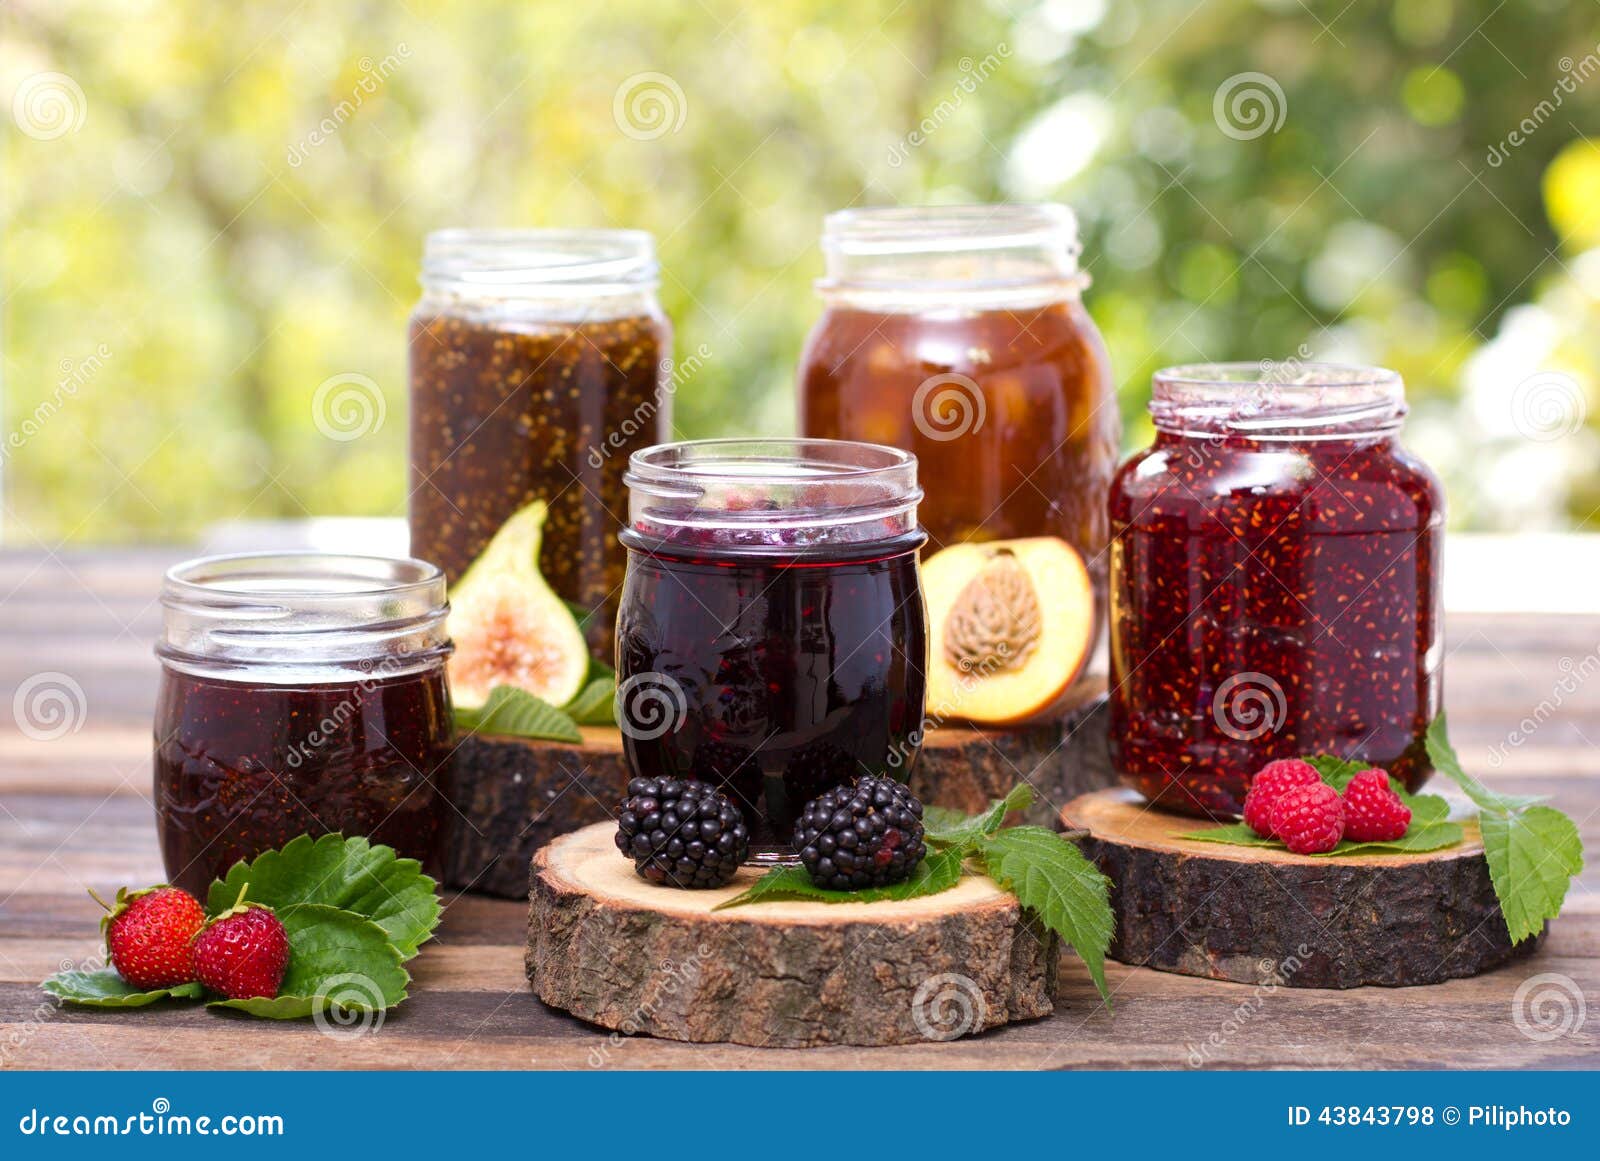 homemade fruit jam in the jar